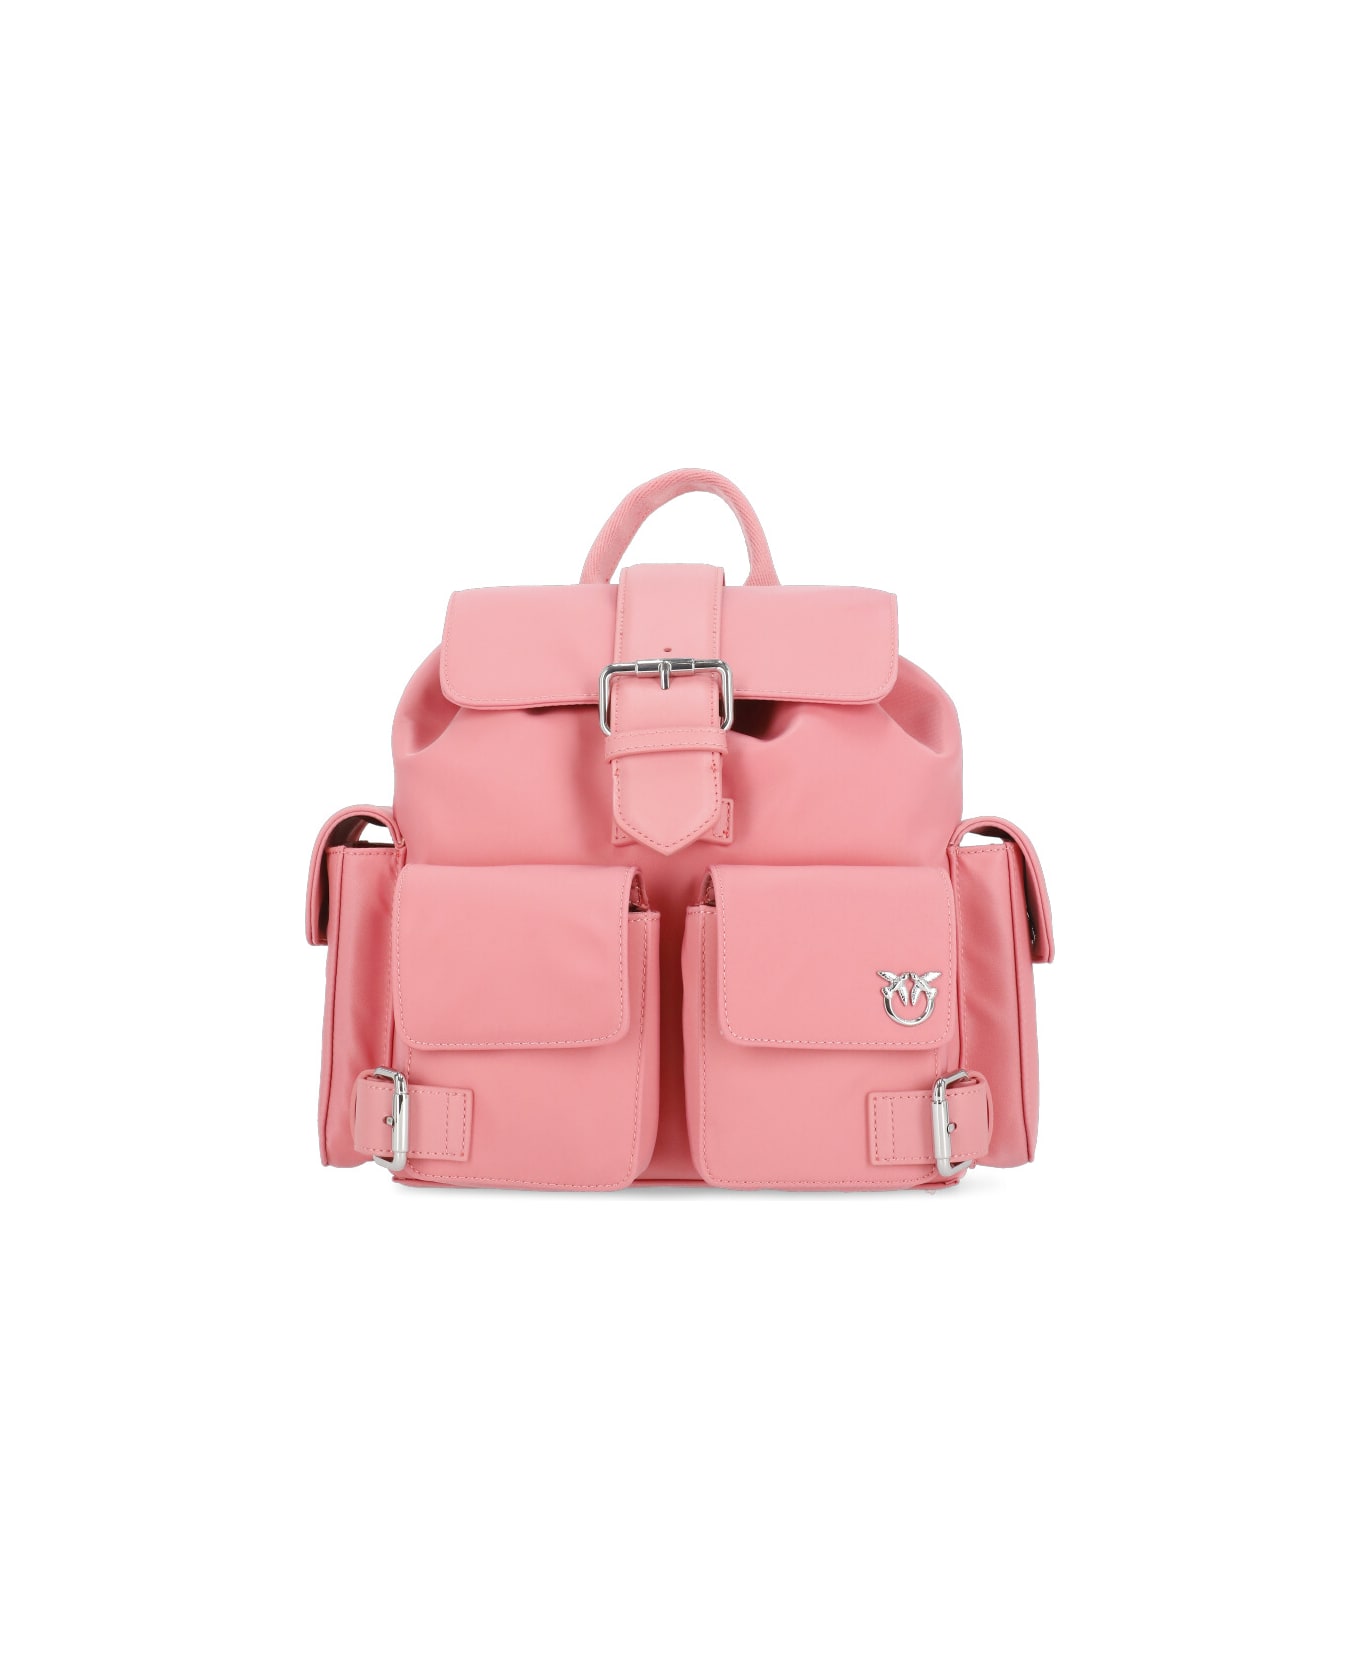 Pinko Pocket Detailed Backpack - Pink バックパック